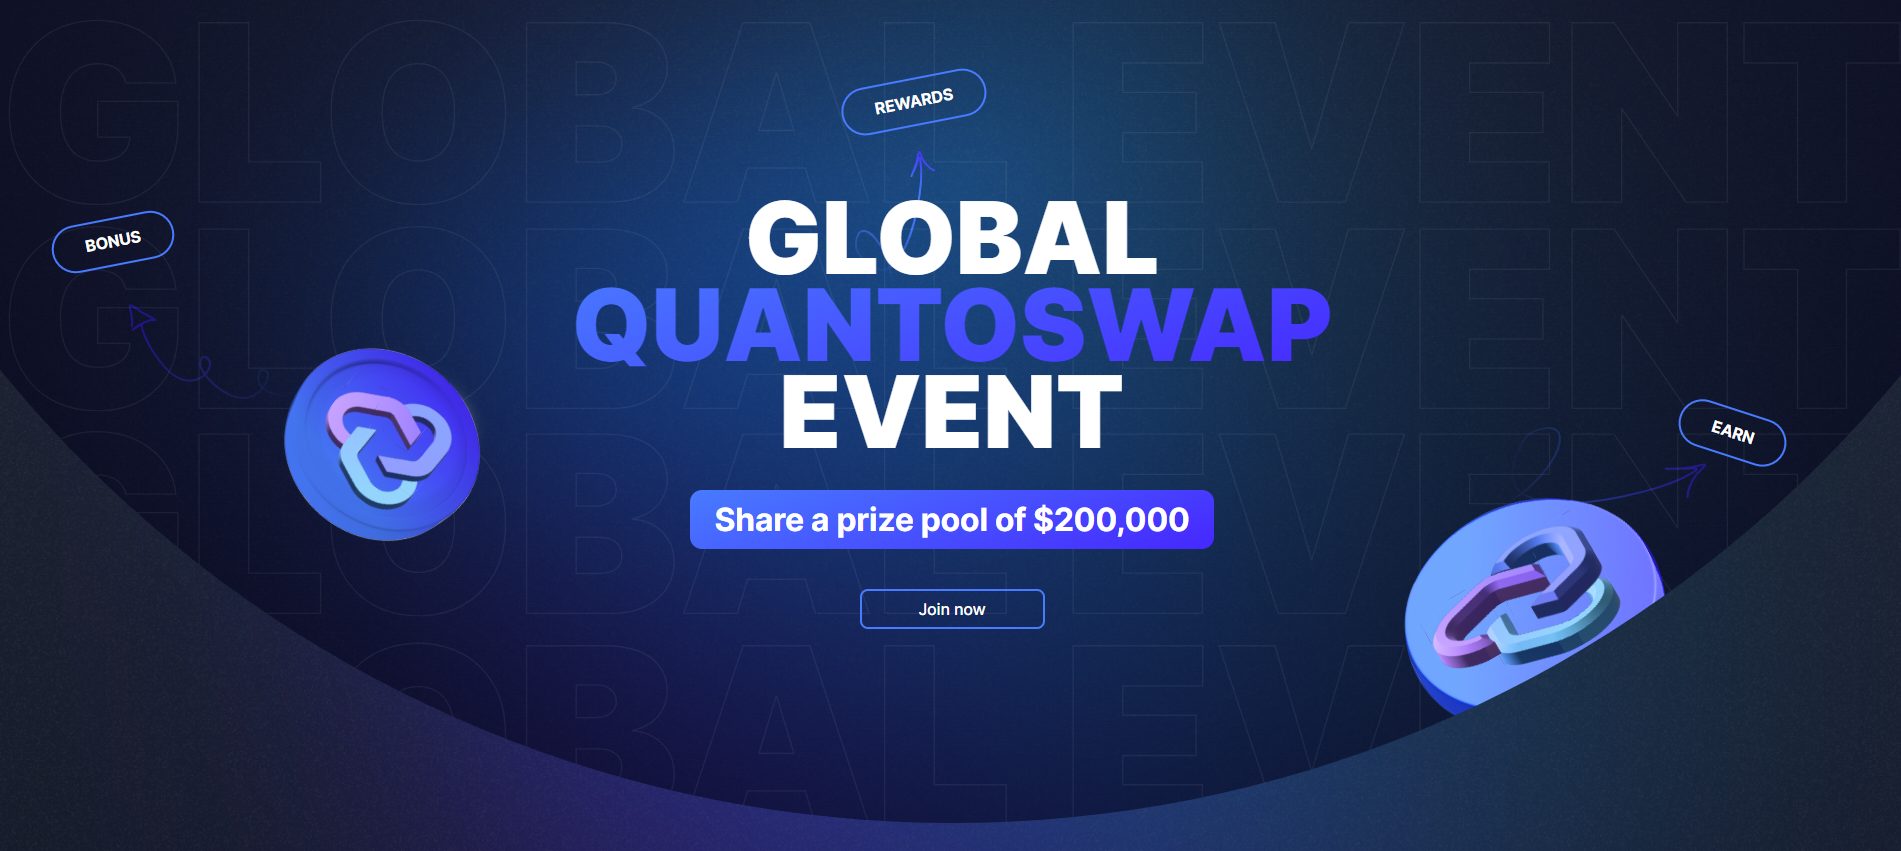 Giới thiệu QuantoSwap: Một DEX dựa trên Ethereum mang tính đột phá với nhiều luồng doanh thu